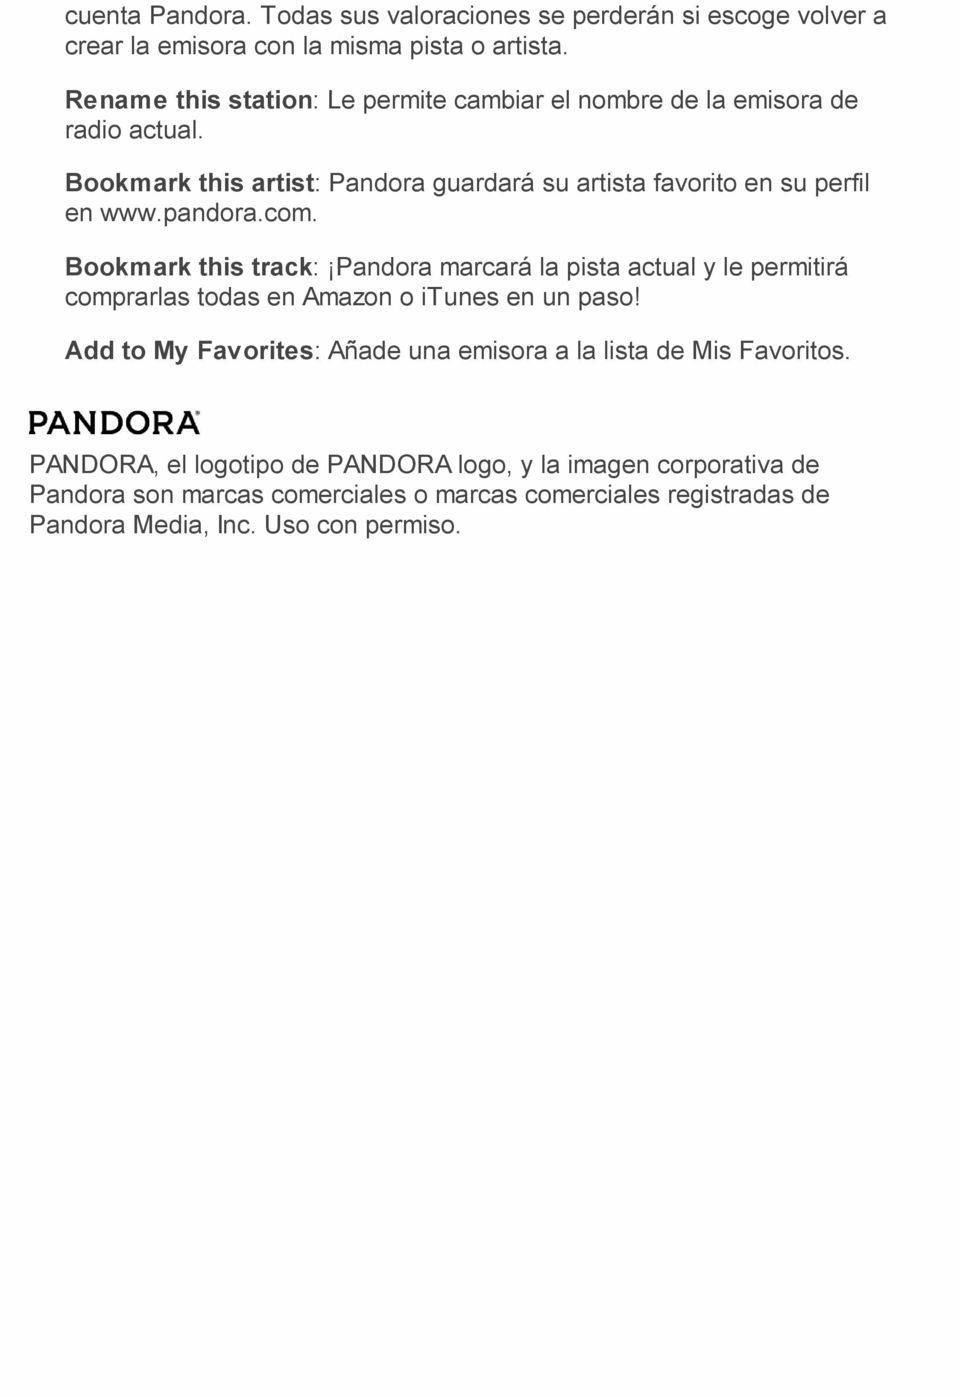 pandora.com. Bookmark this track: Pandora marcará la pista actual y le permitirá comprarlas todas en Amazon o itunes en un paso!